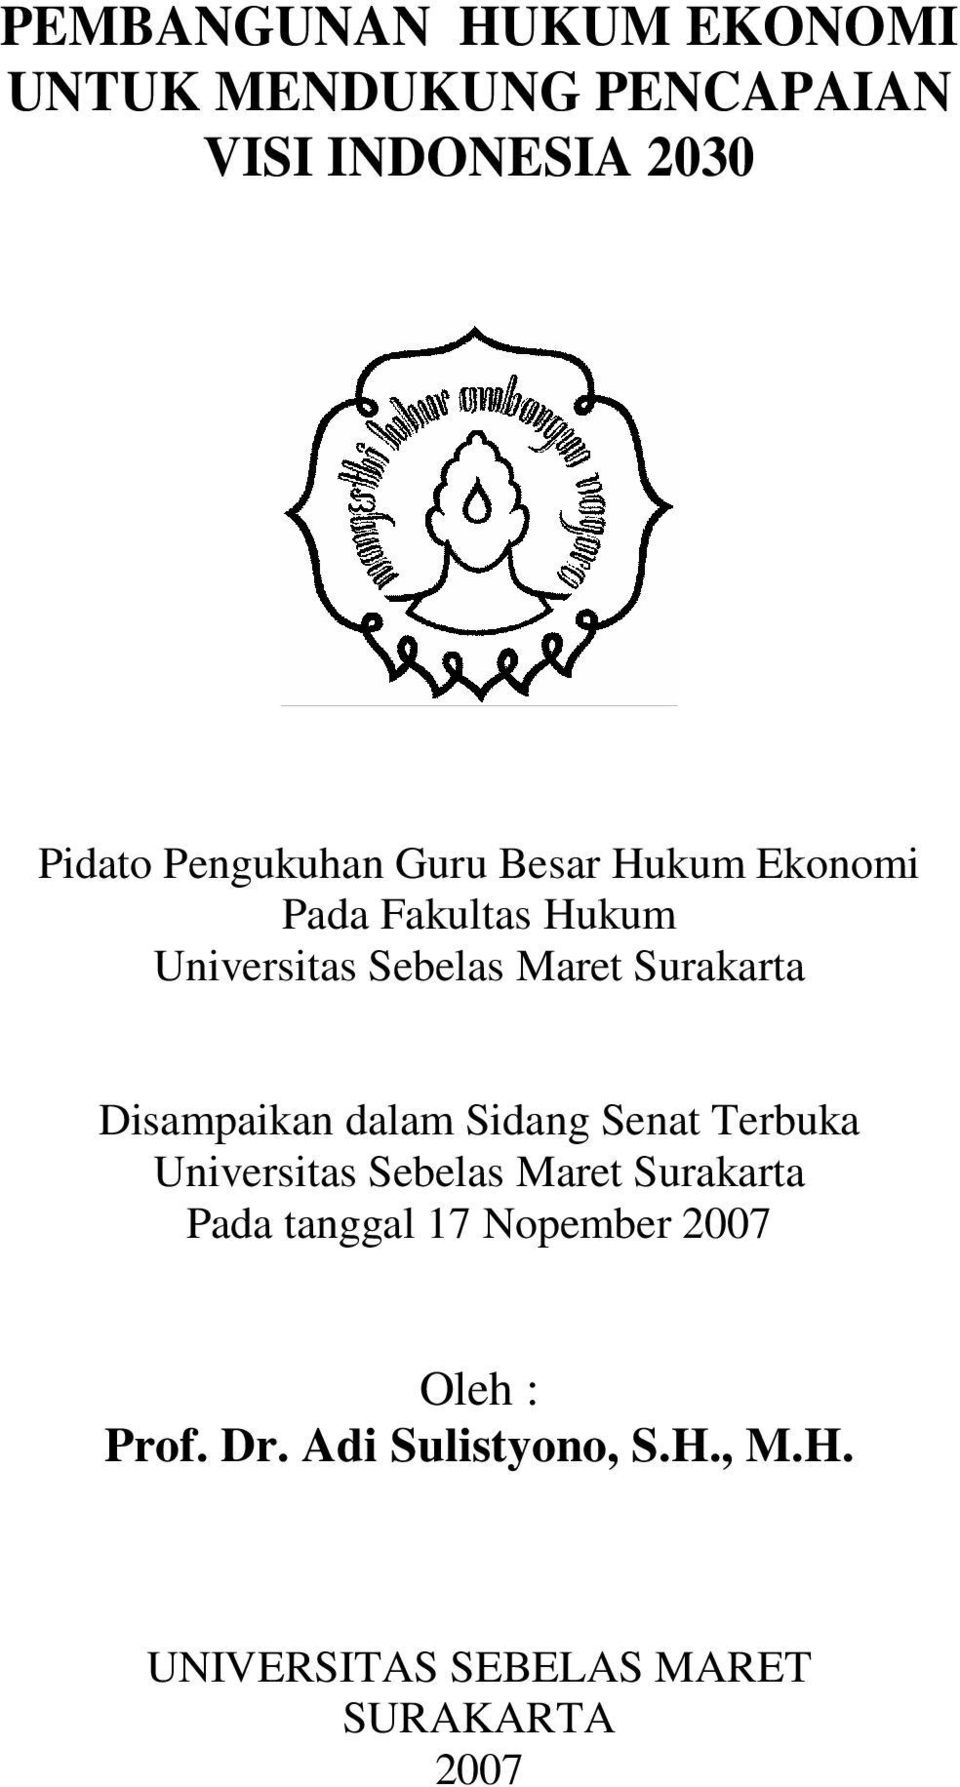 Terbuka Universitas Sebelas Maret Surakarta Pada tanggal 17 Nopember 2007 Oleh : Prof. Dr.